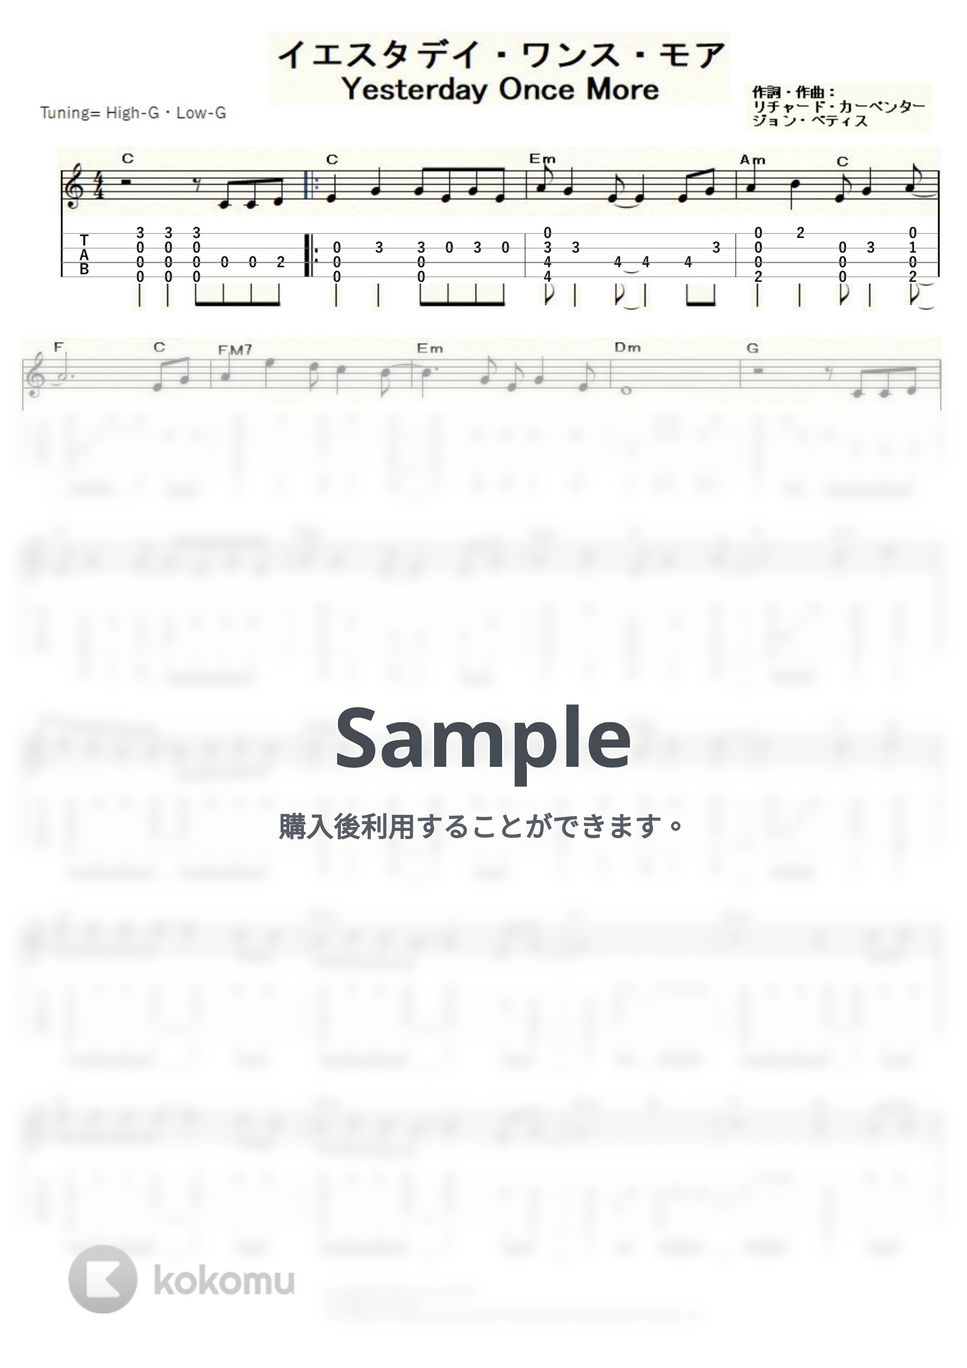 カーペンターズ - イエスタデイ・ワンス・モア～YESTERDAY ONCE MORE～ (ｳｸﾚﾚｿﾛ / High-G・Low-G / 中級) by ukulelepapa